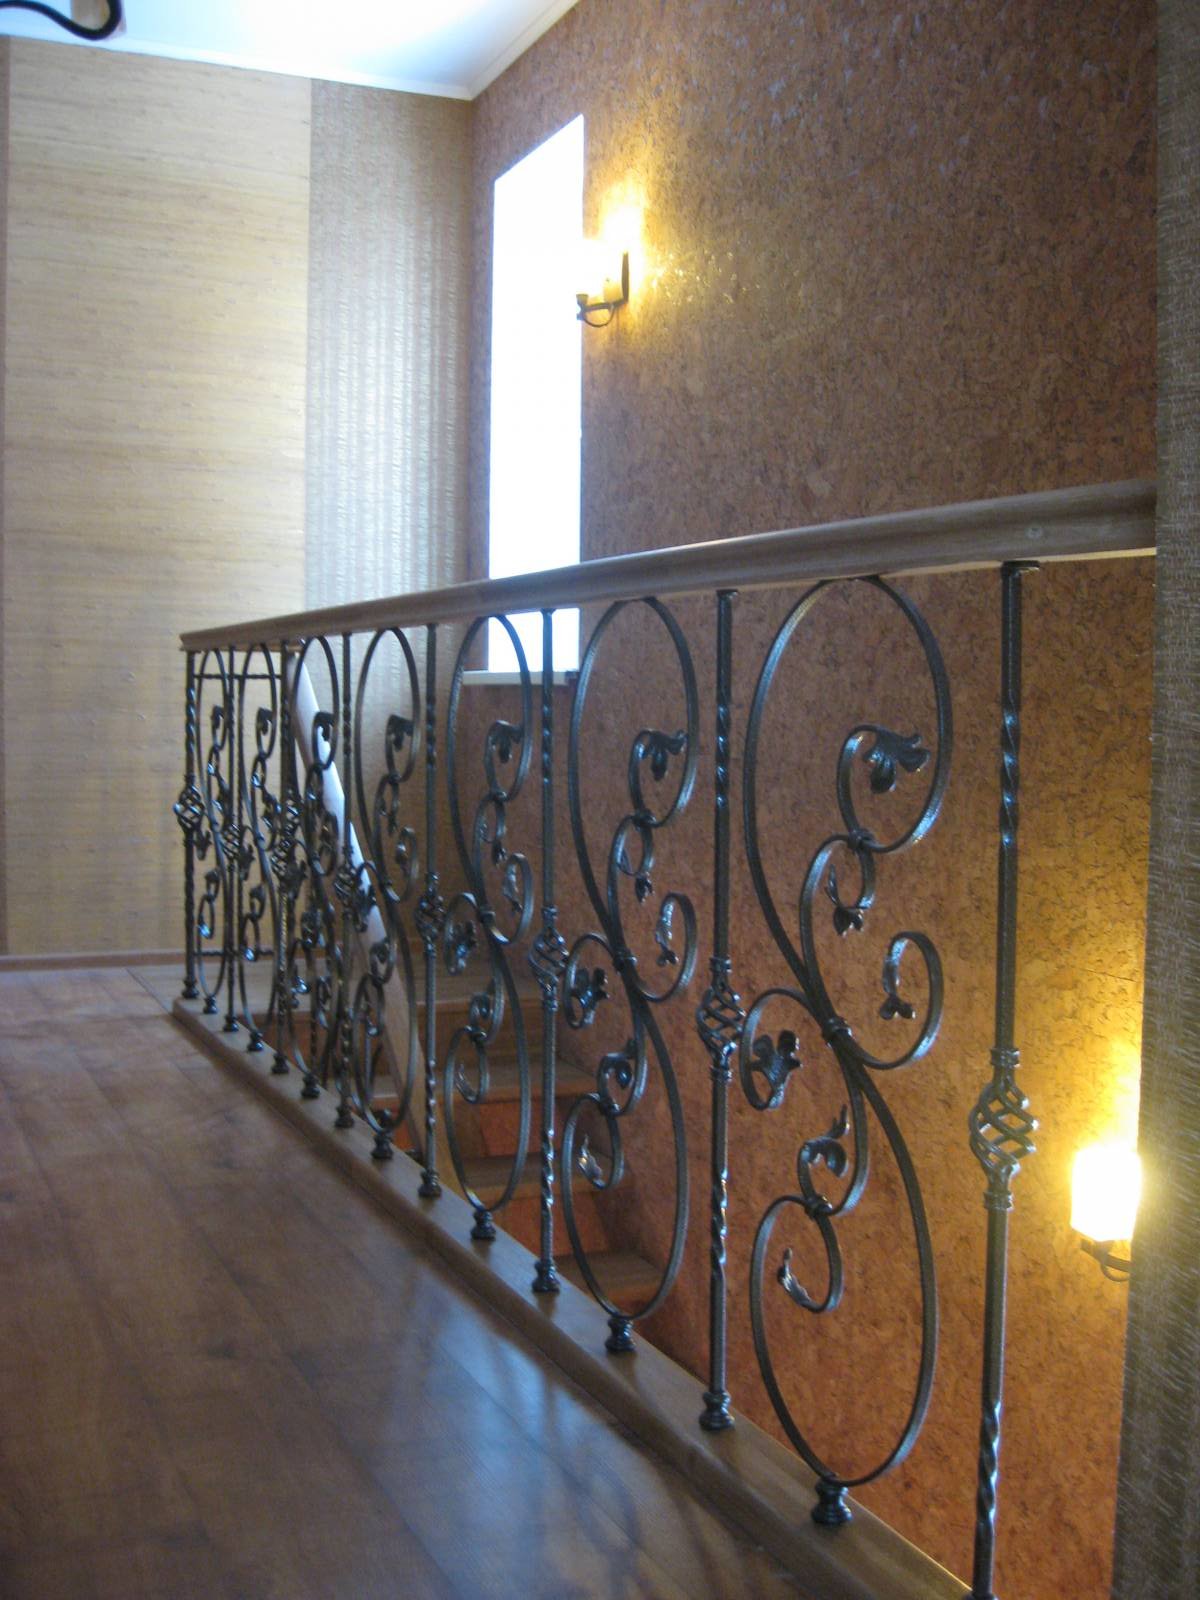 Воронеж. Изготовление деревянной лестницы второго этажа дома с коваными элементами